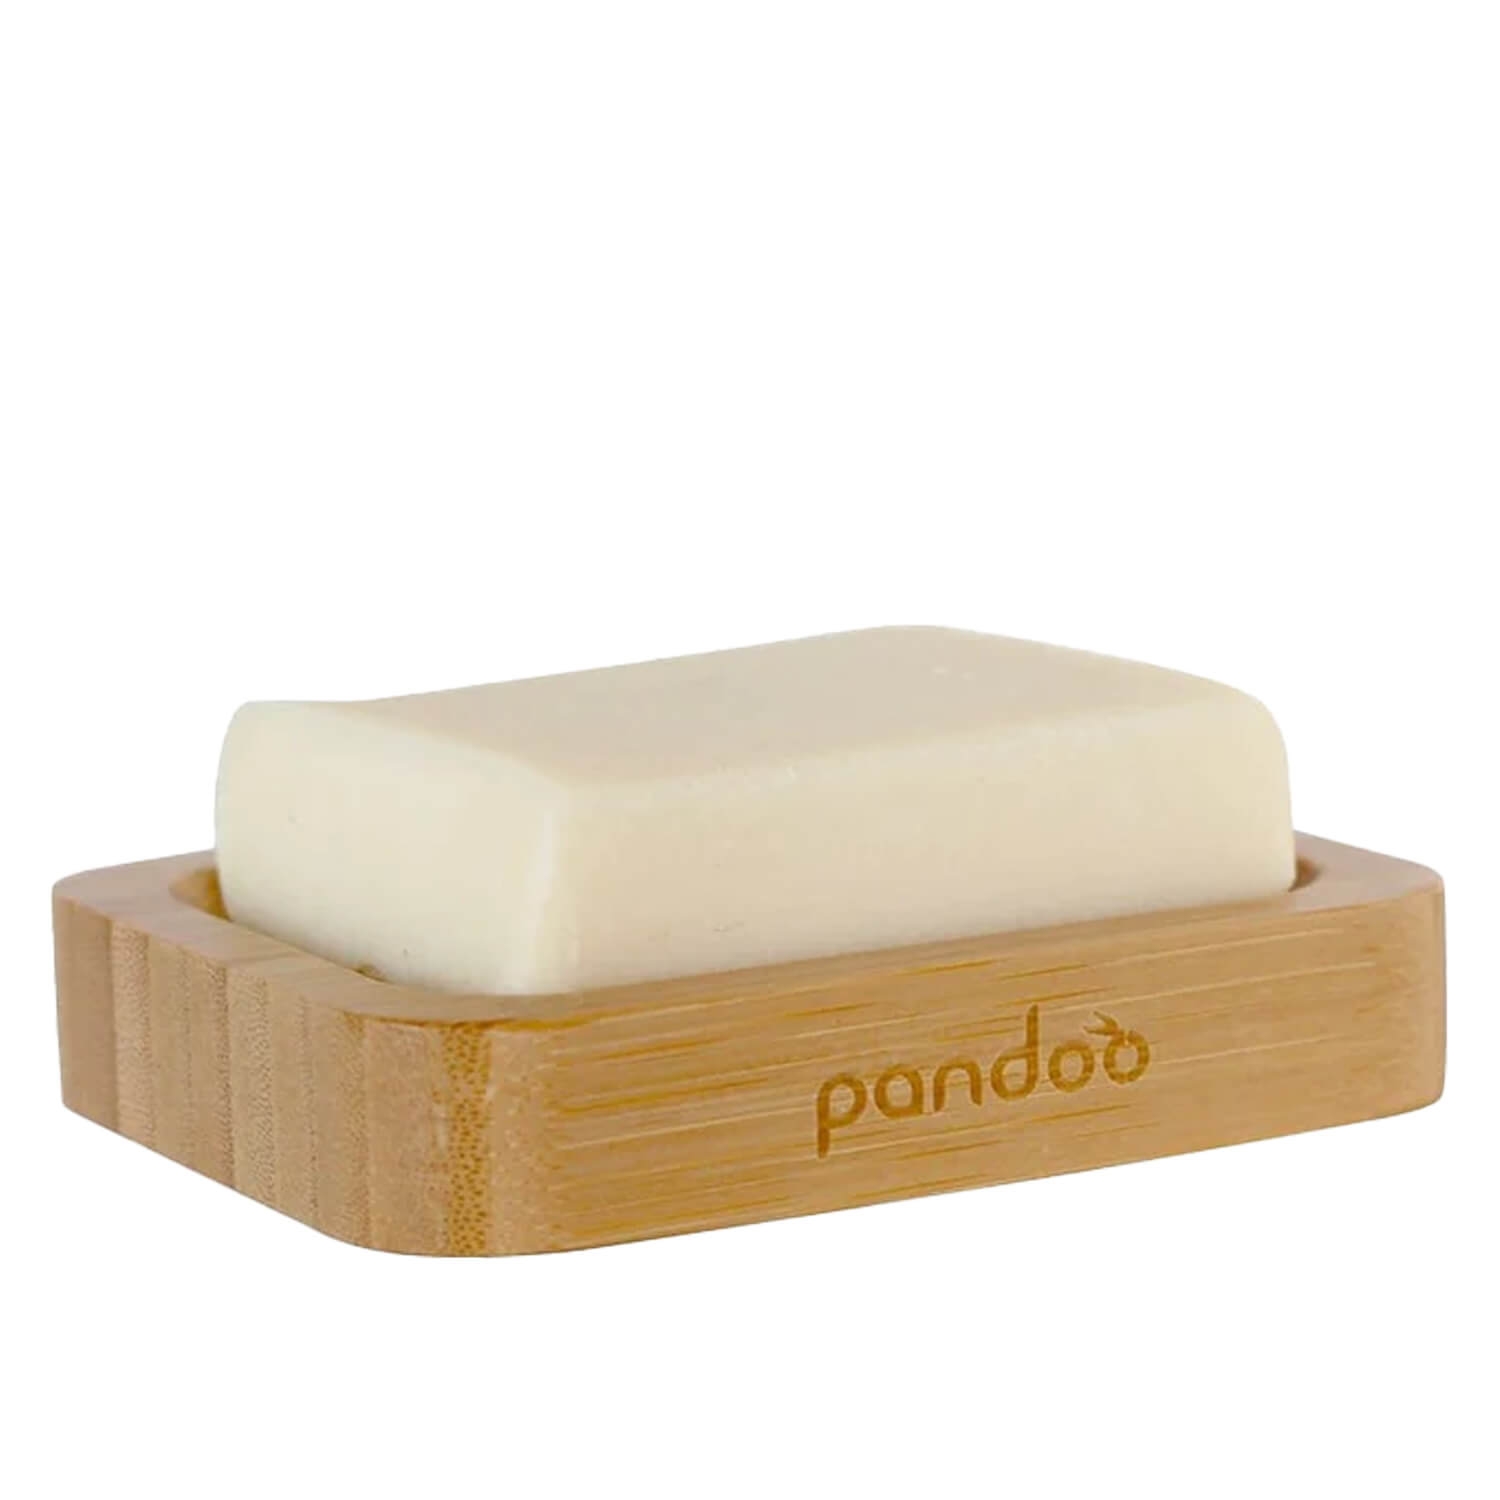 Produktbild von pandoo - Seifenschale aus Bambus